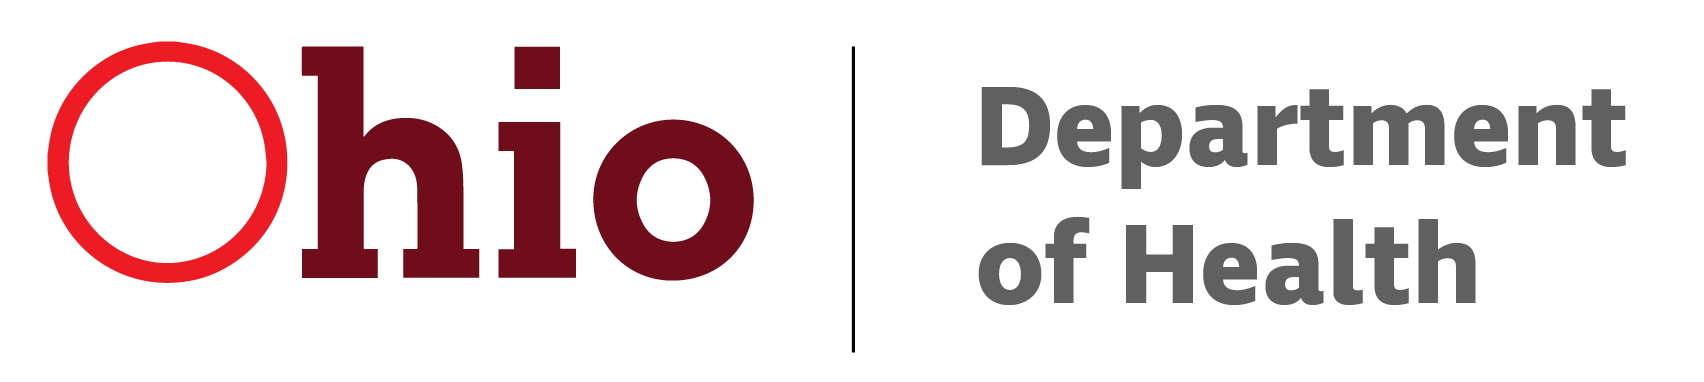 ODH Logo - Ohio Department of Health | Ohio.gov